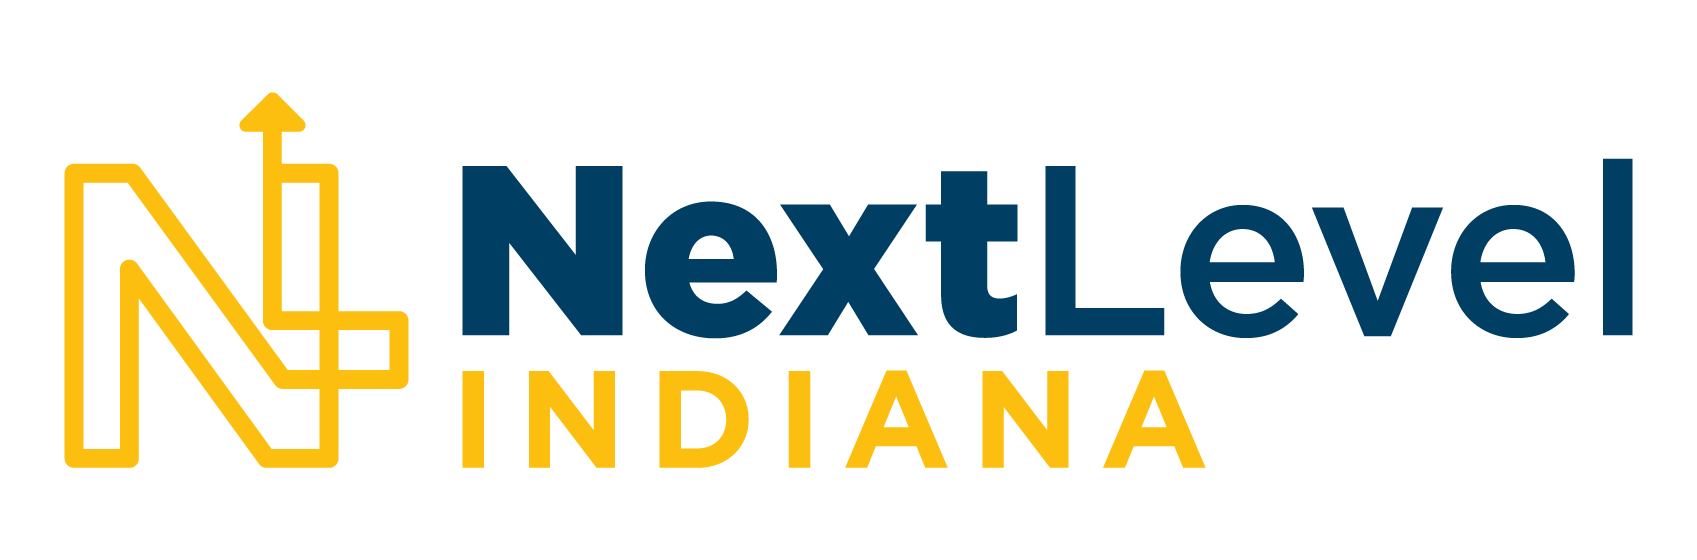 NextLevel Indiana logo